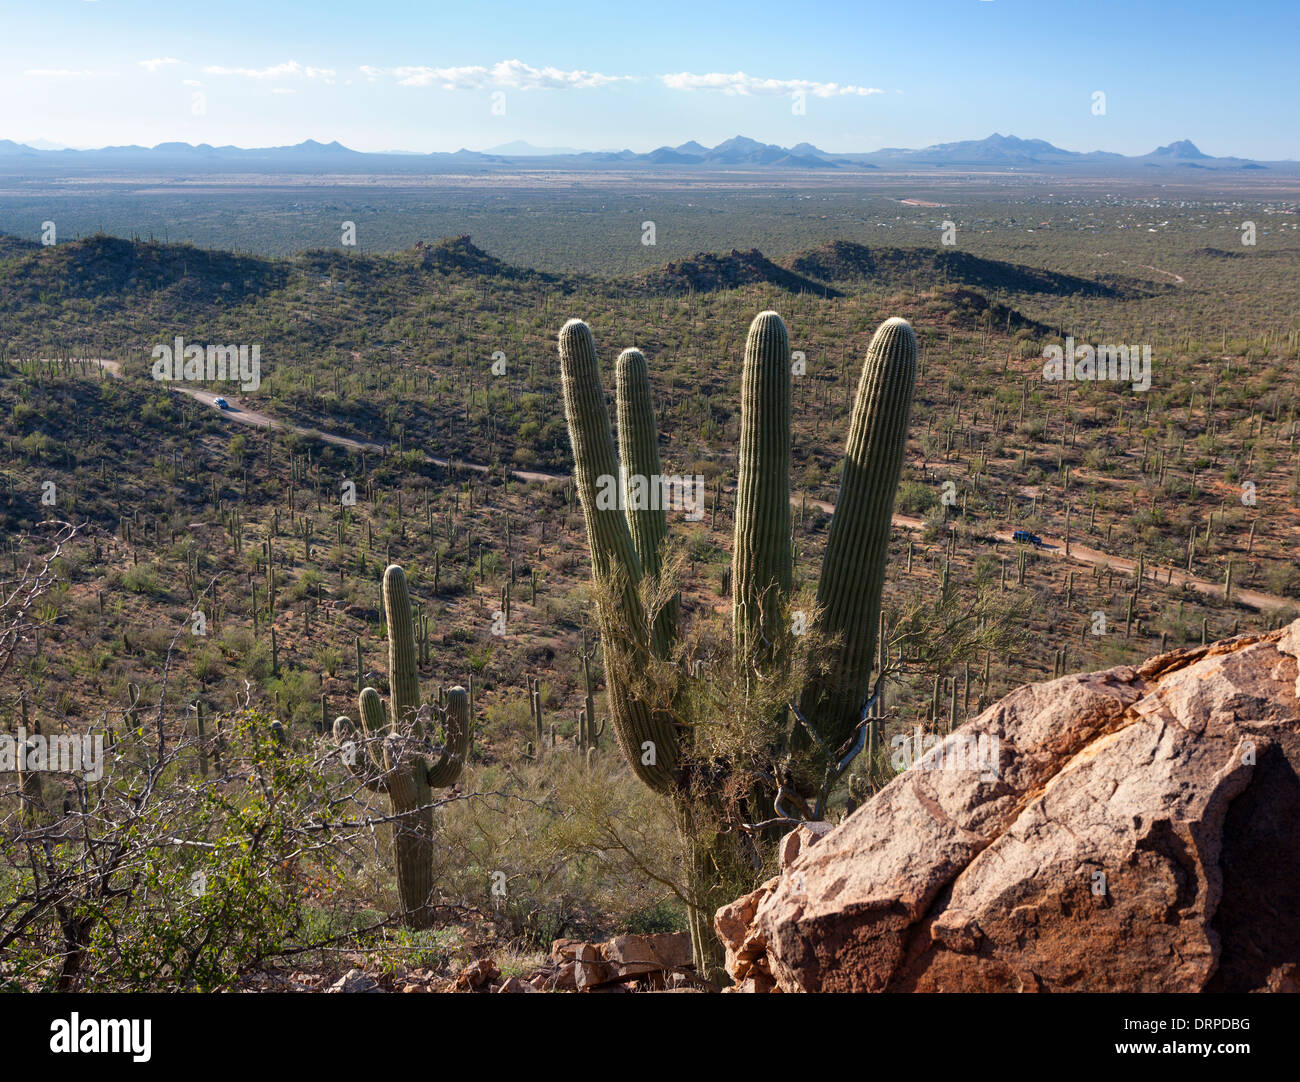 Eine Ansicht des Saguaro West National Park in Tucson Arizona aus auf einem Hügel. Stockfoto